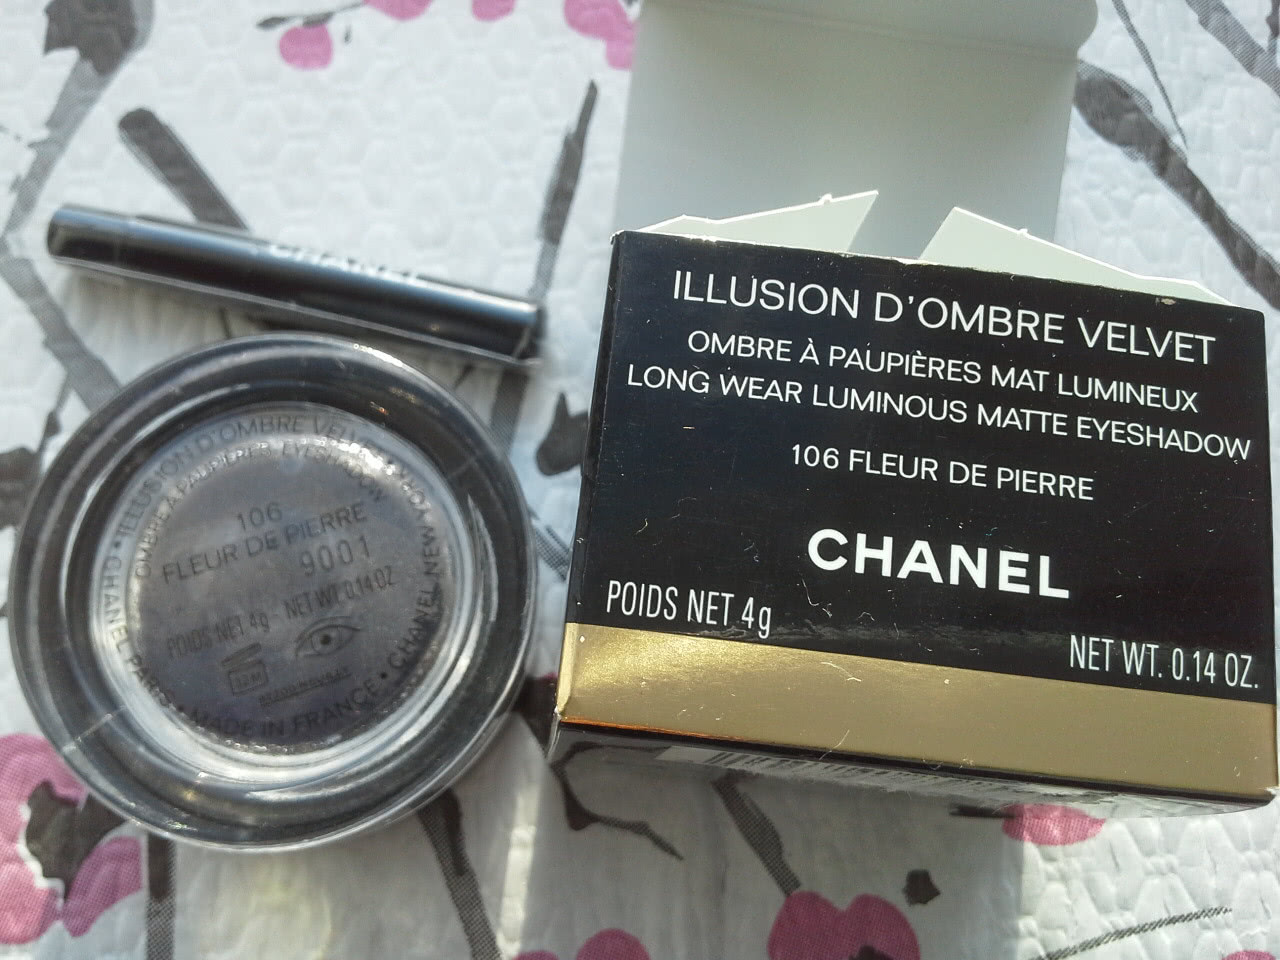 Шанель, кремовые тени 106 Fleur de Pierre